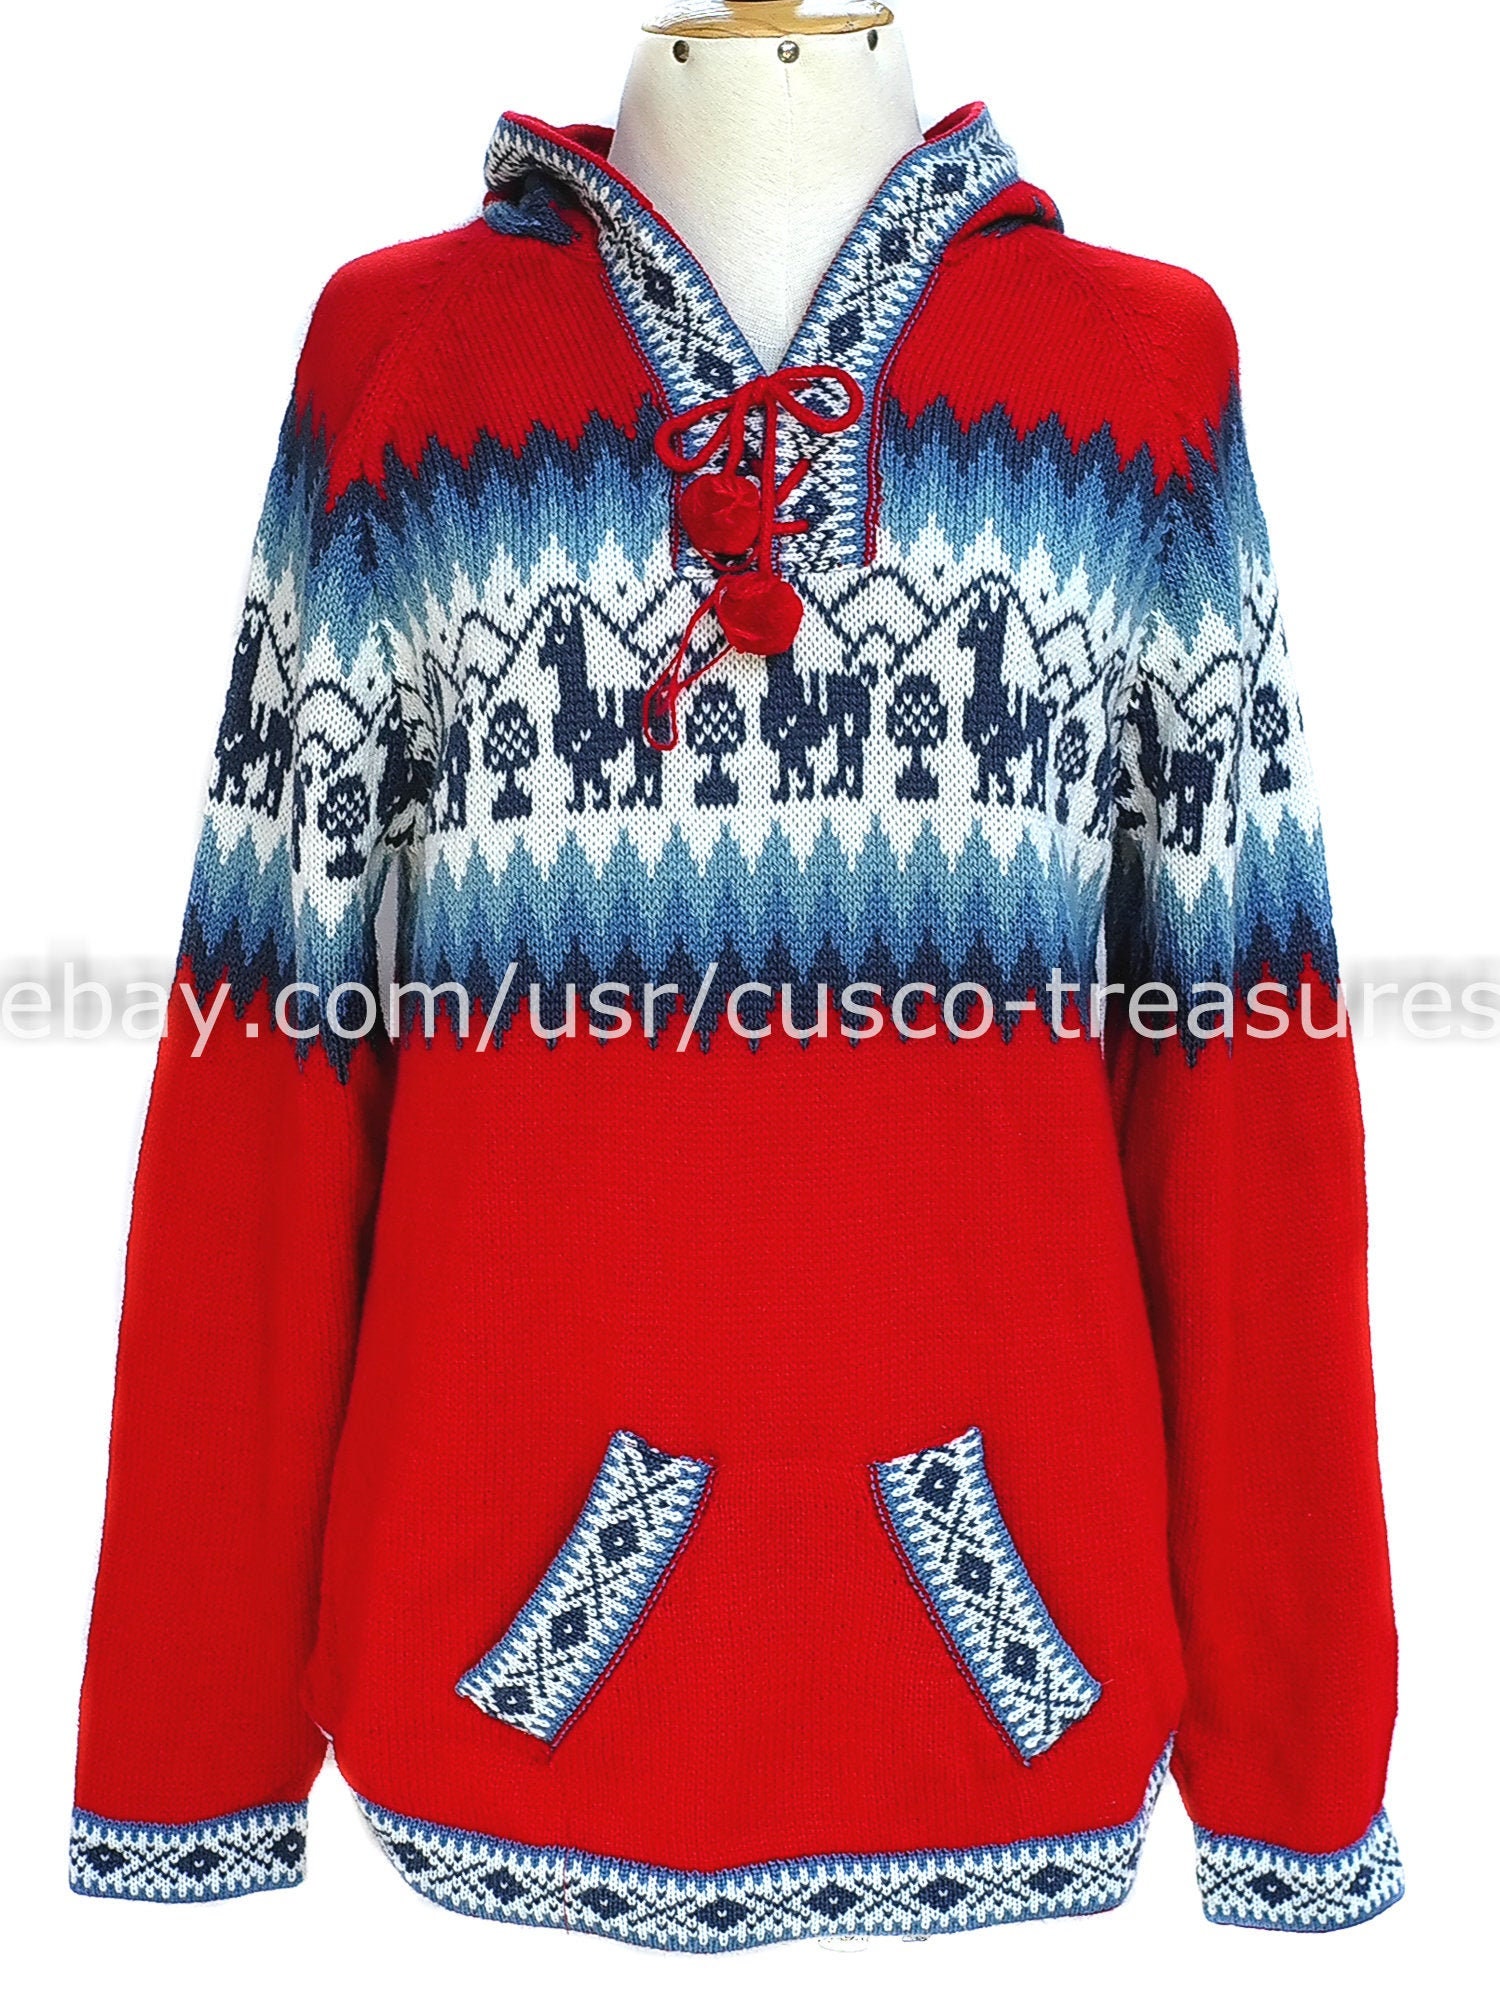 Kleding Dameskleding Hoodies & Sweatshirts Hoodies Alpachill sweater jas alpaca blend ultra warm jasje 